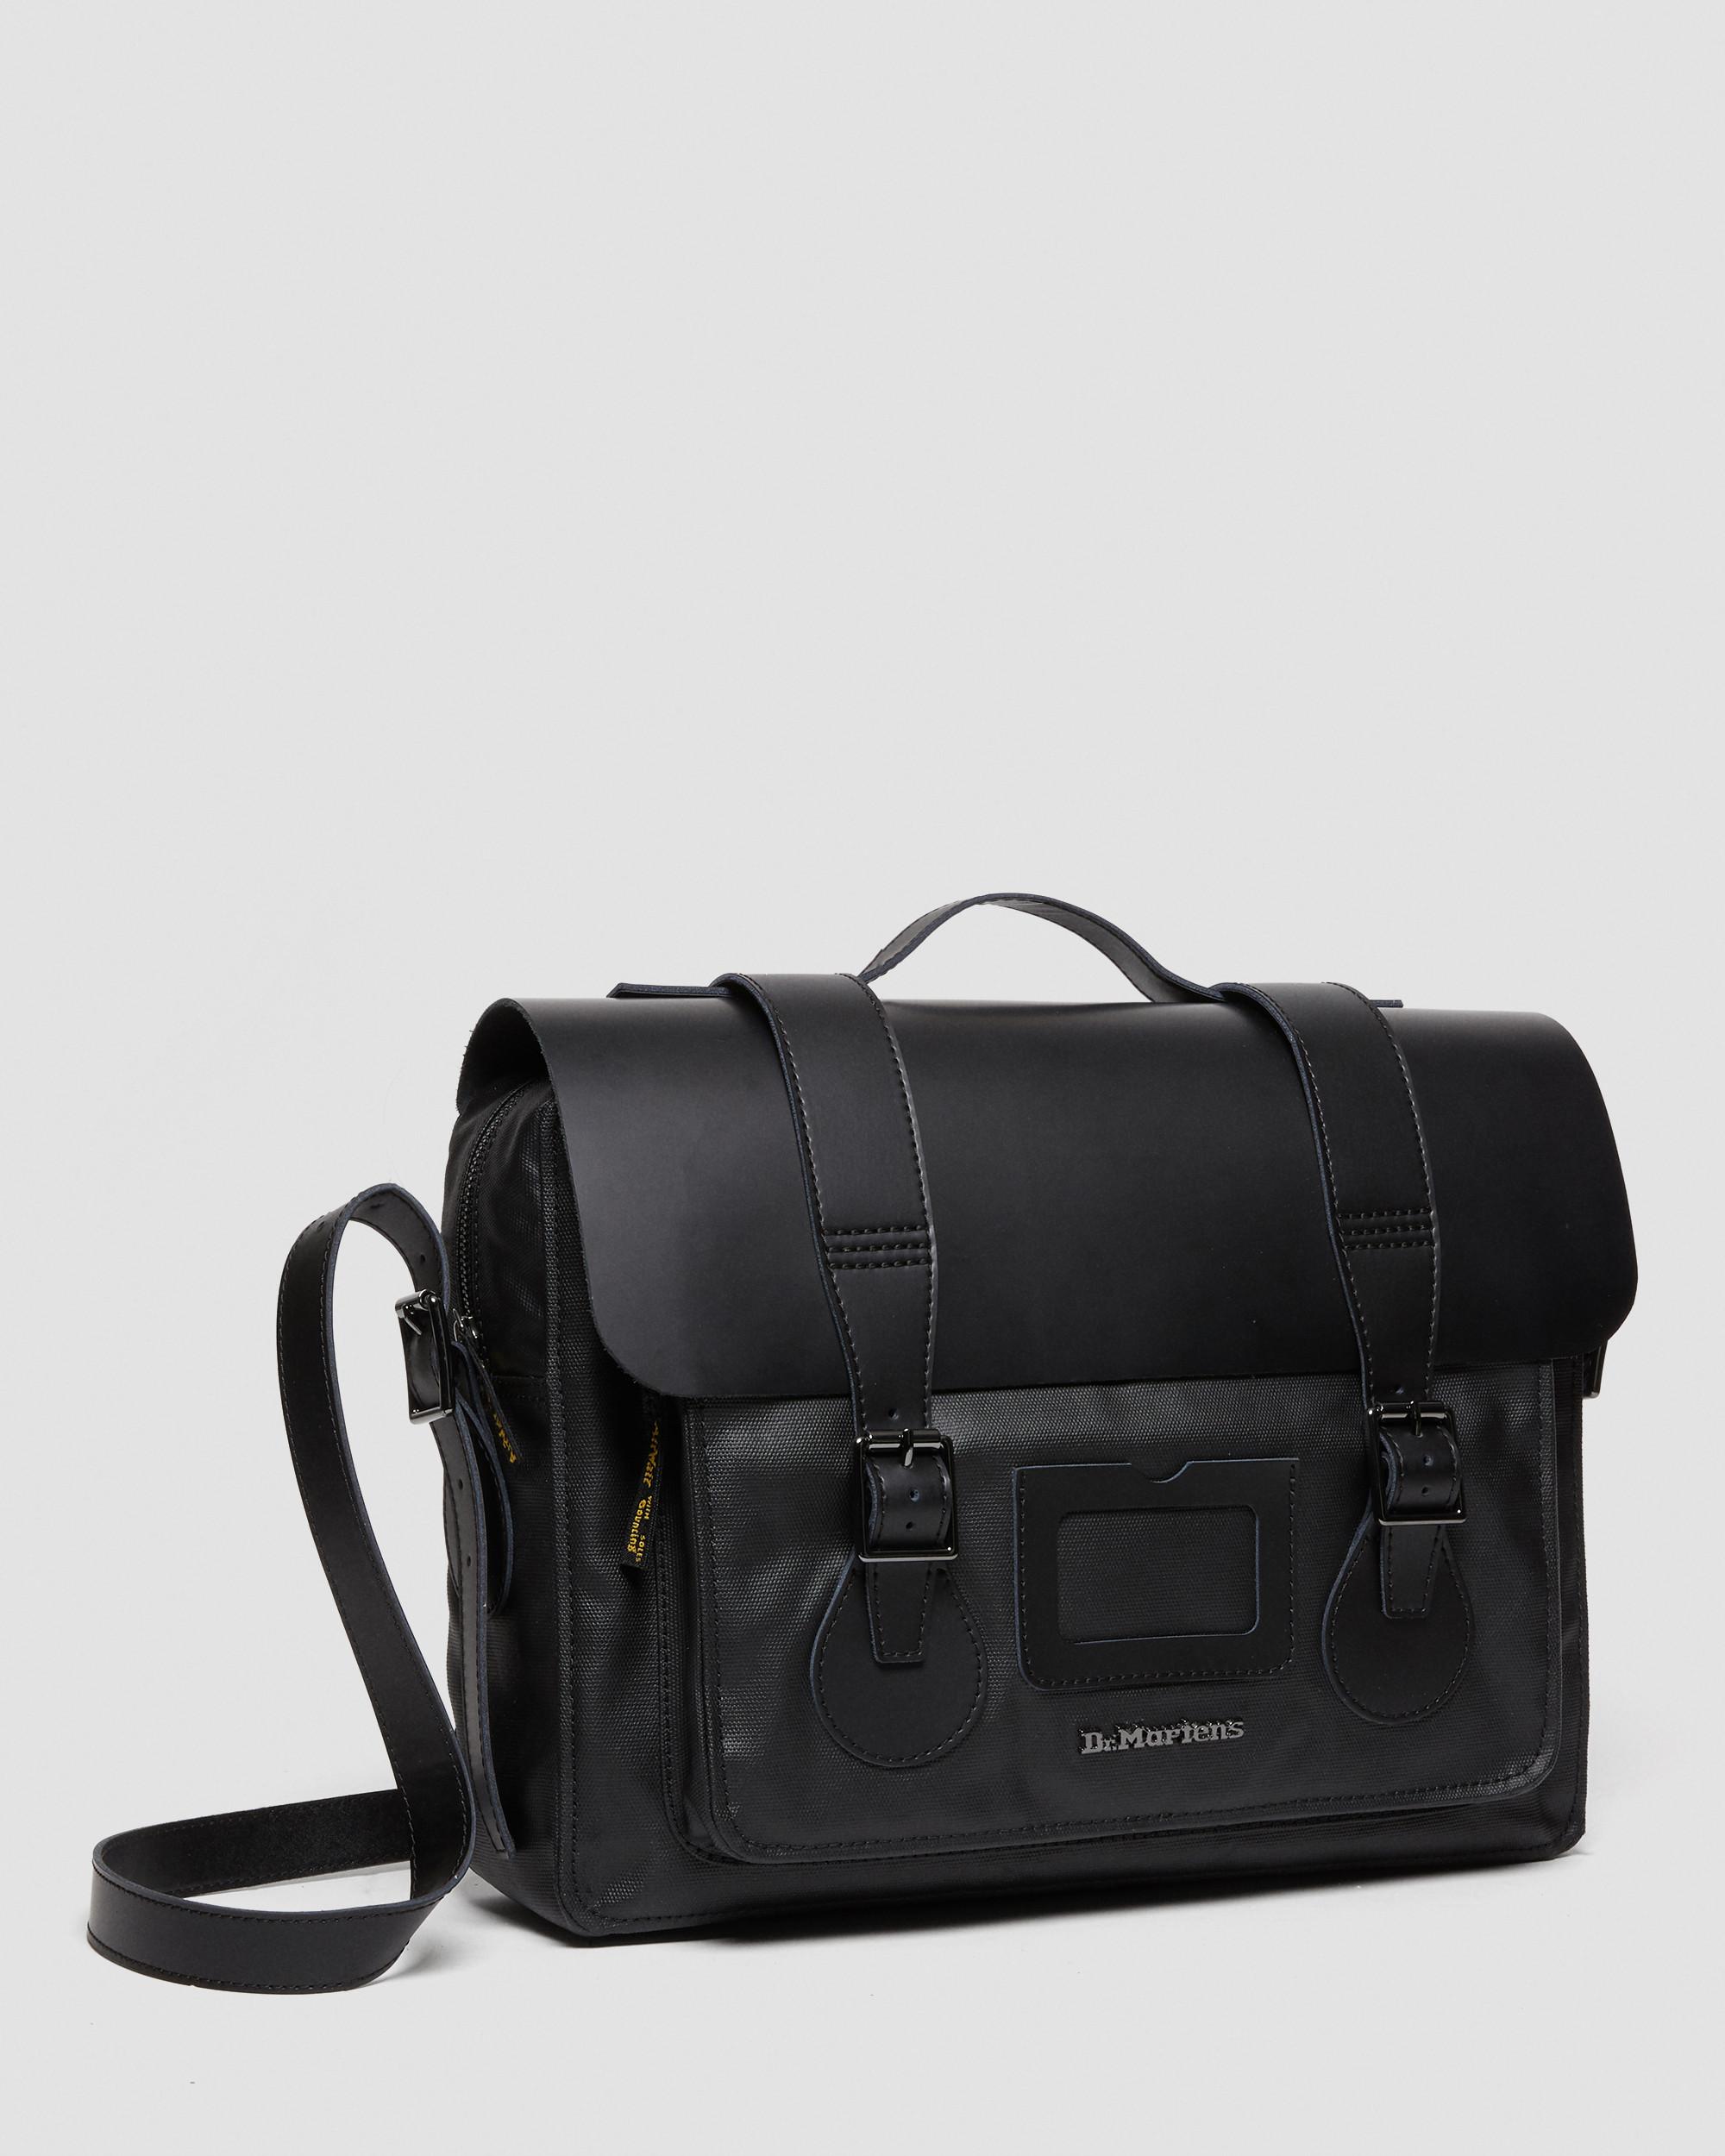 Leather & Canvas Messenger Bag in Black | Dr. Martens